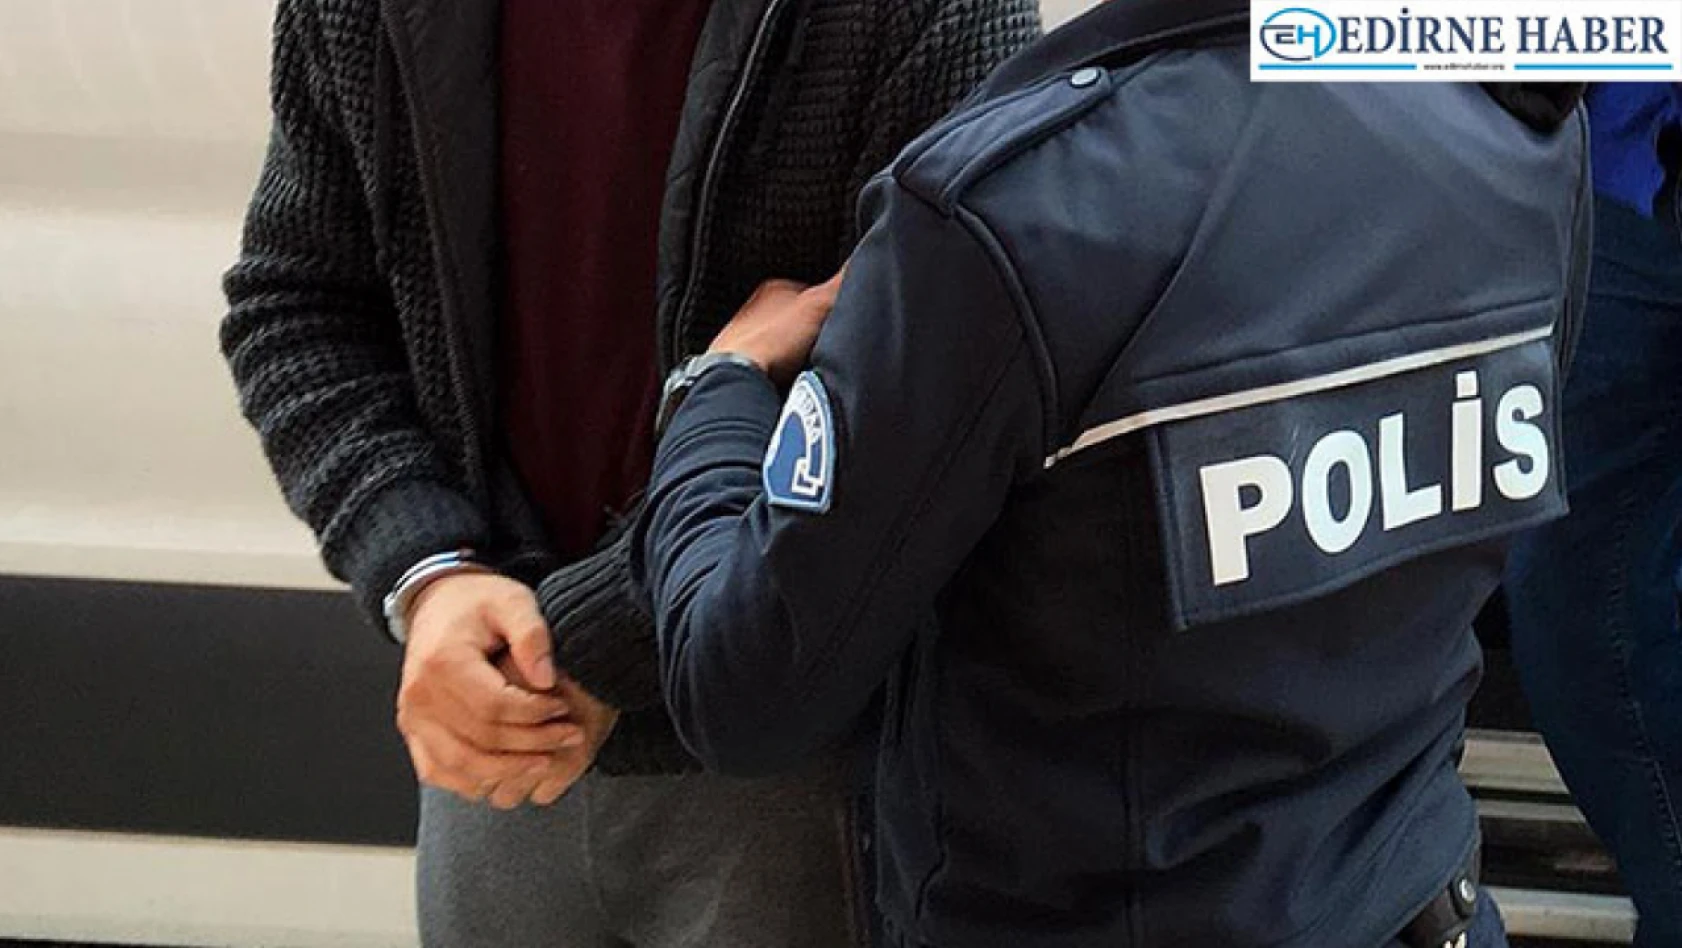 Edirne'deki uyuşturucu operasyonunda yakalanan 3 zanlı tutuklandı